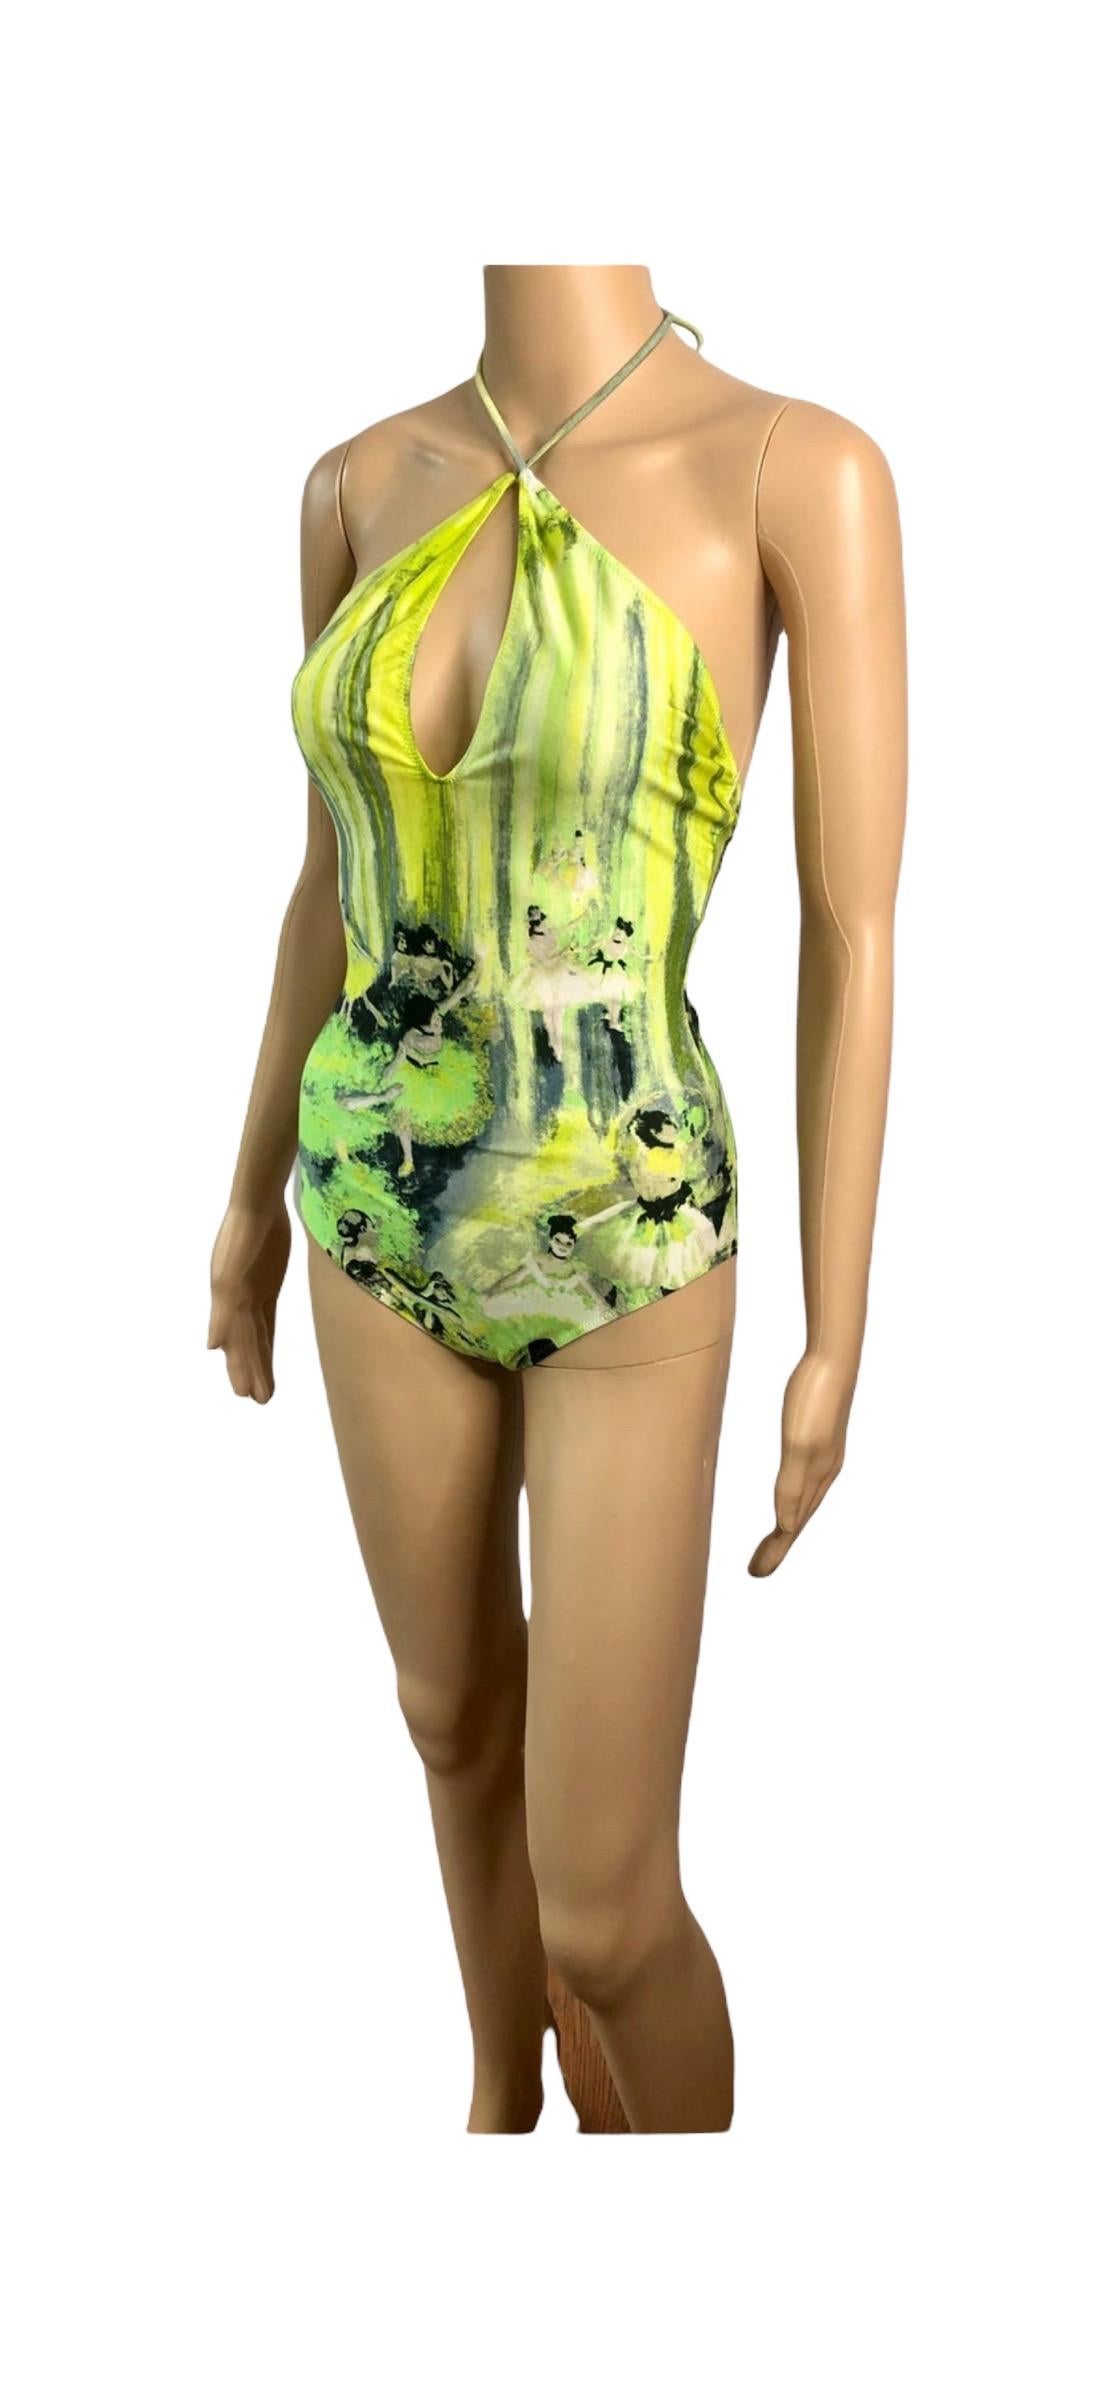 Jean Paul Gaultier Soleil S/S 2004 Degas Ballet Bodysuit Swimwear Swimsuit For Sale 6